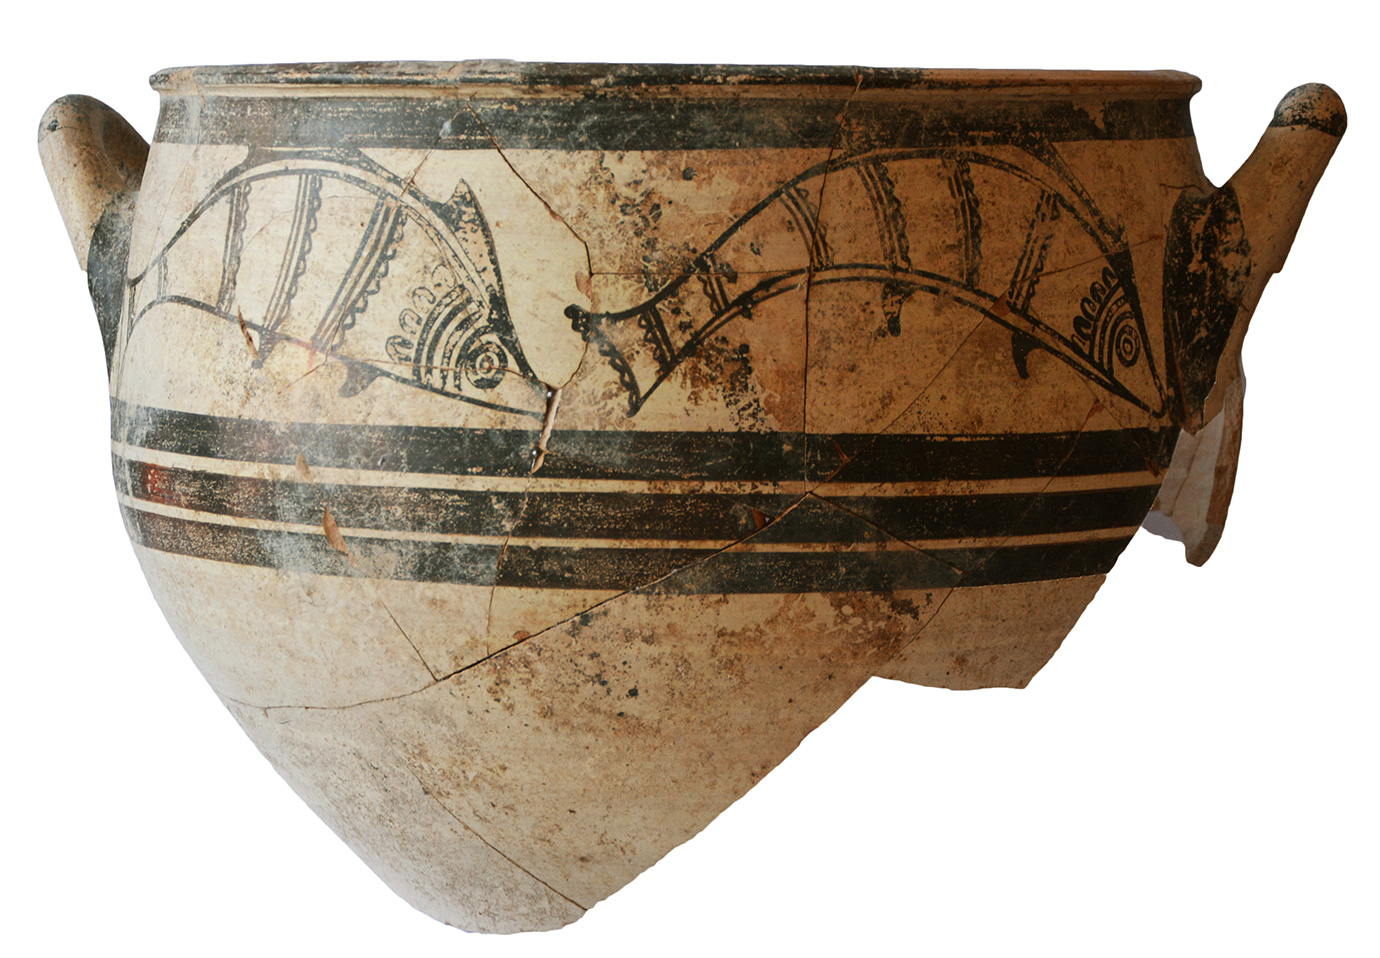 Mycenaean (Greek) vessel with fish motifs, c. 1300 BC. Photo: Peter Fischer.